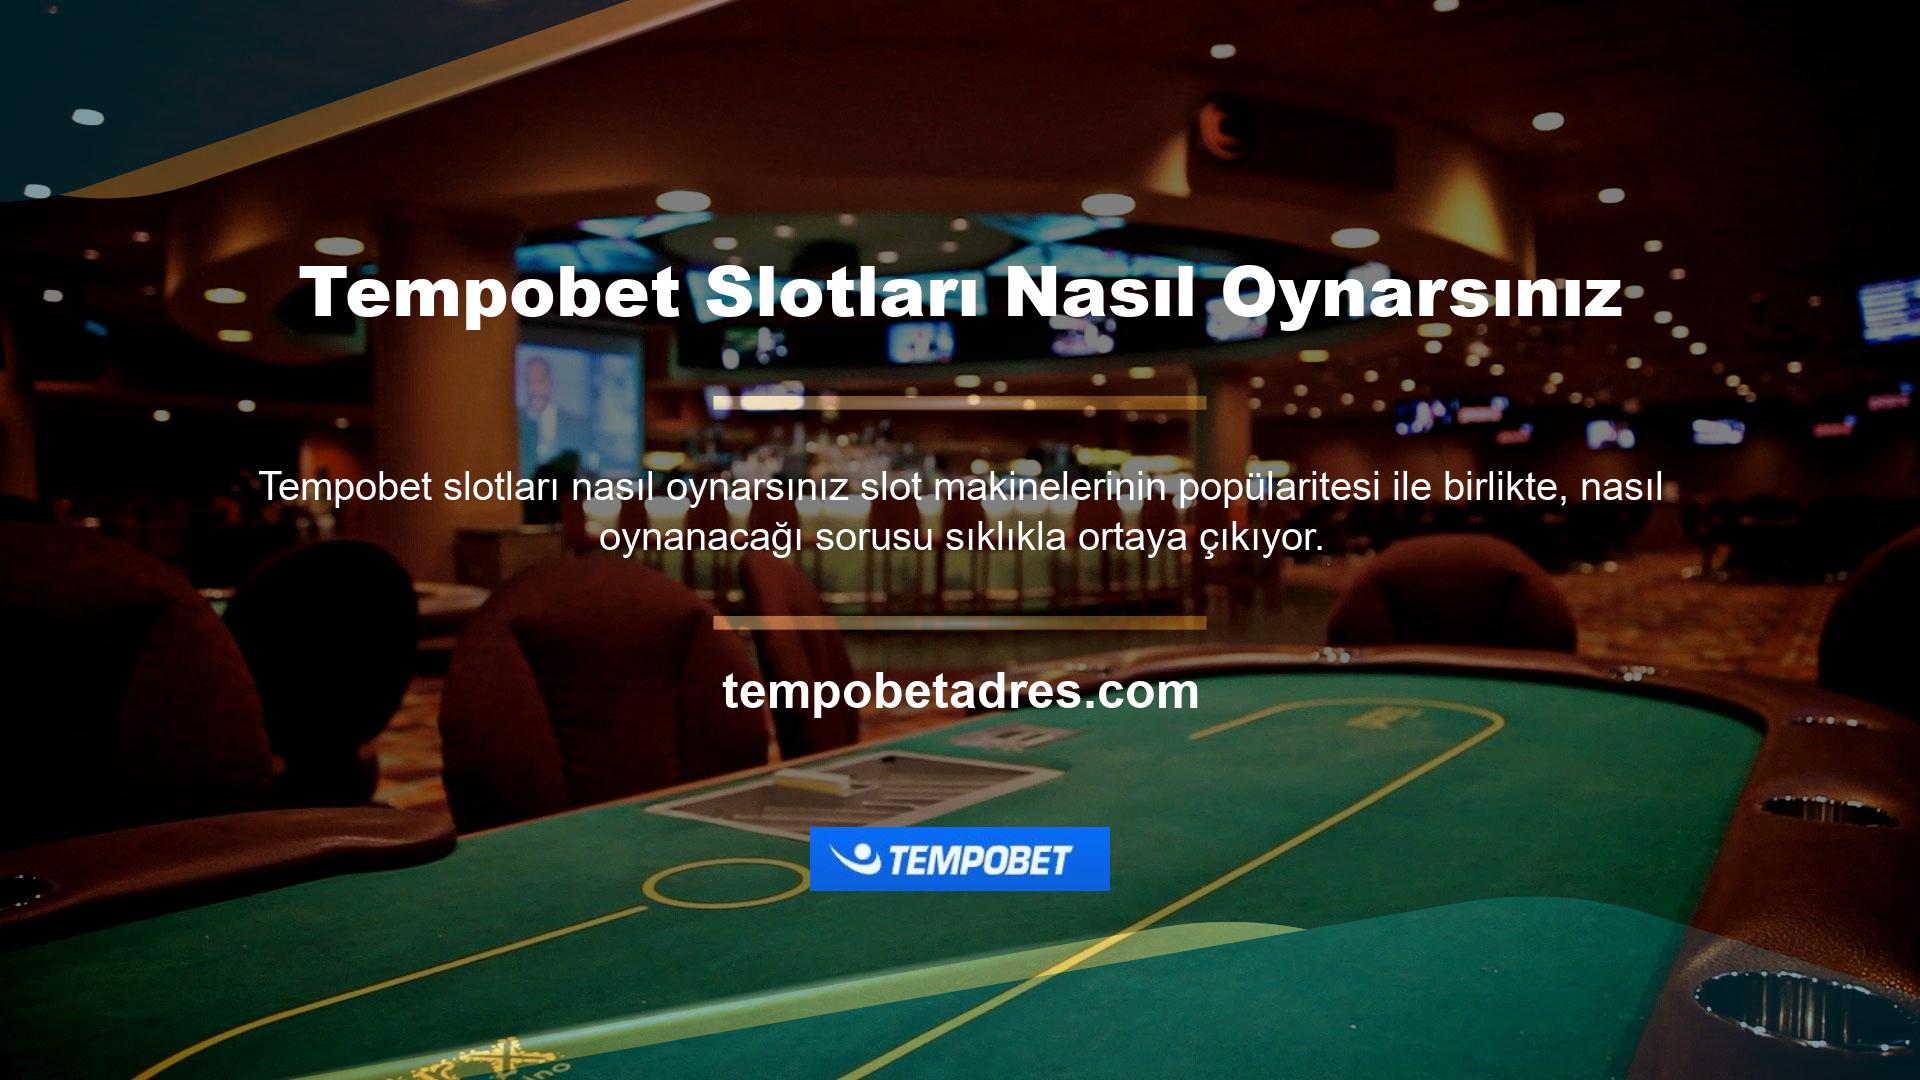 Slot makinelerinde oynamak için öncelikle Tempobet sitesine üye olmalısınız